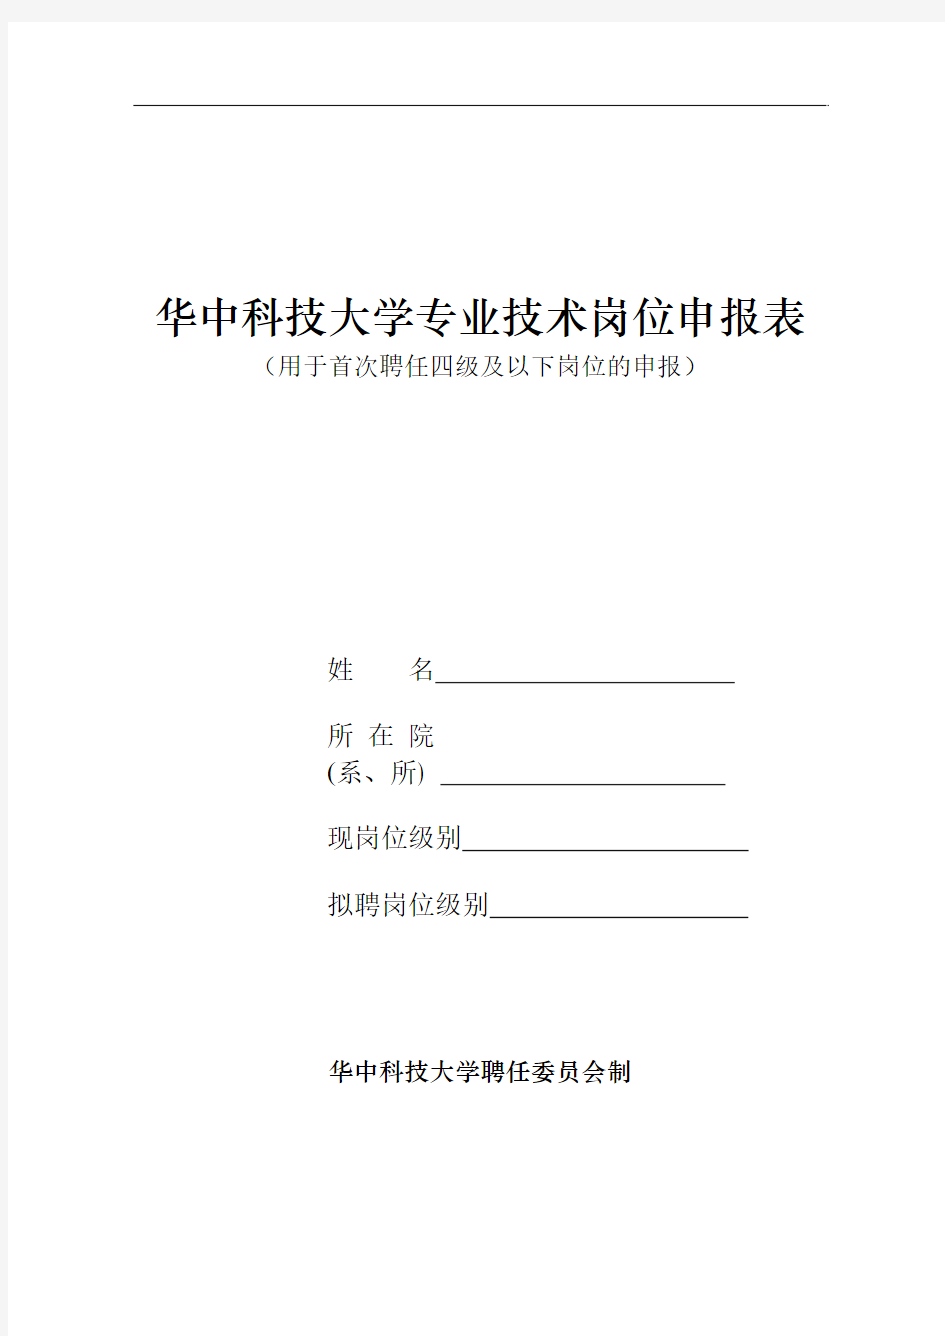 华中科技大学专业技术岗位申报表